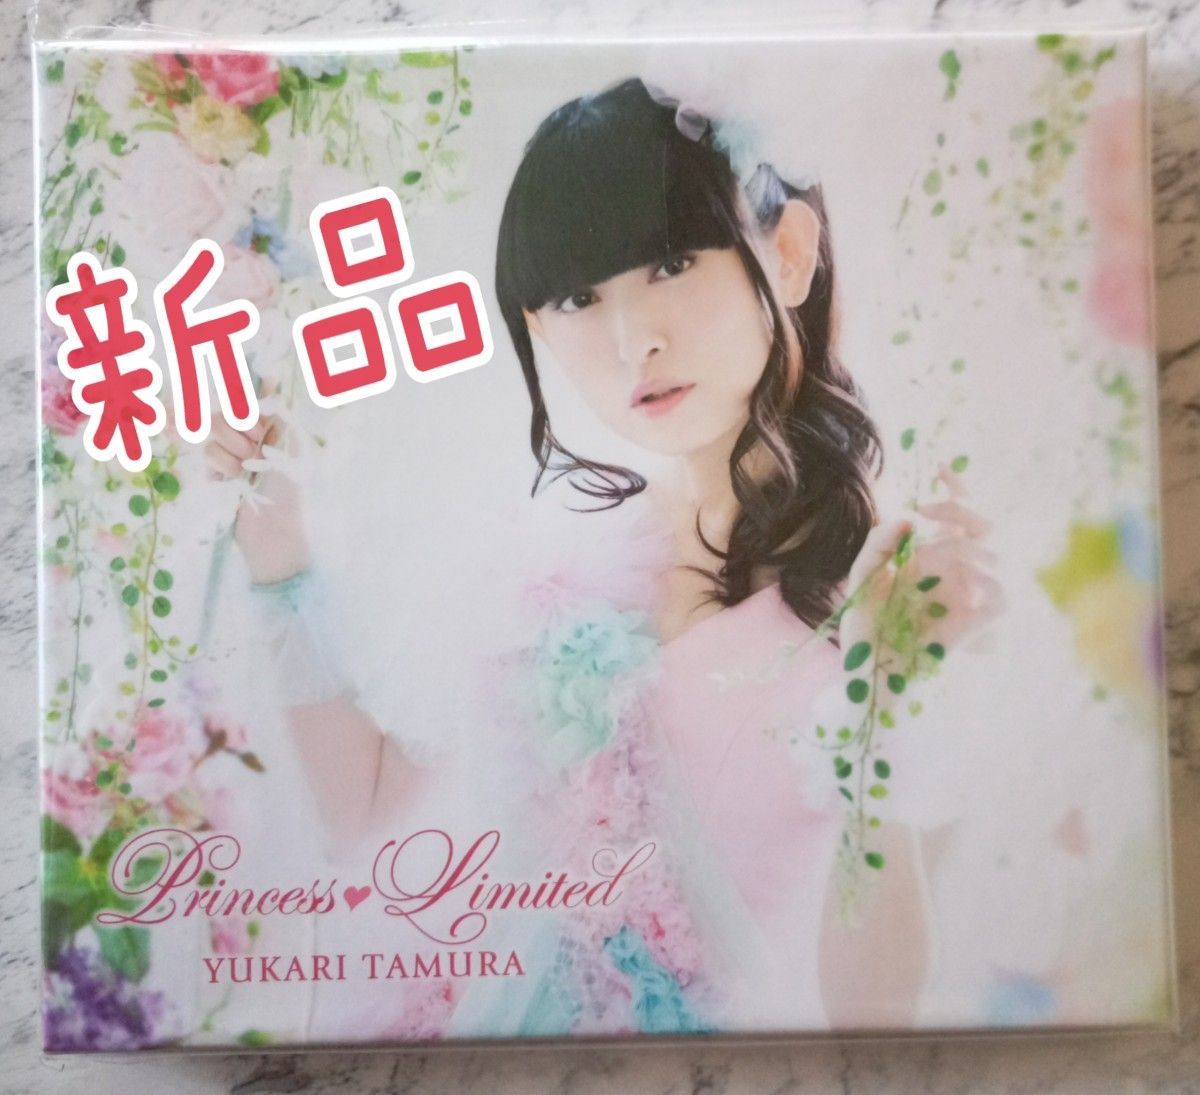 新品☆田村ゆかり プリンセスリミテッド Princess Limited CD